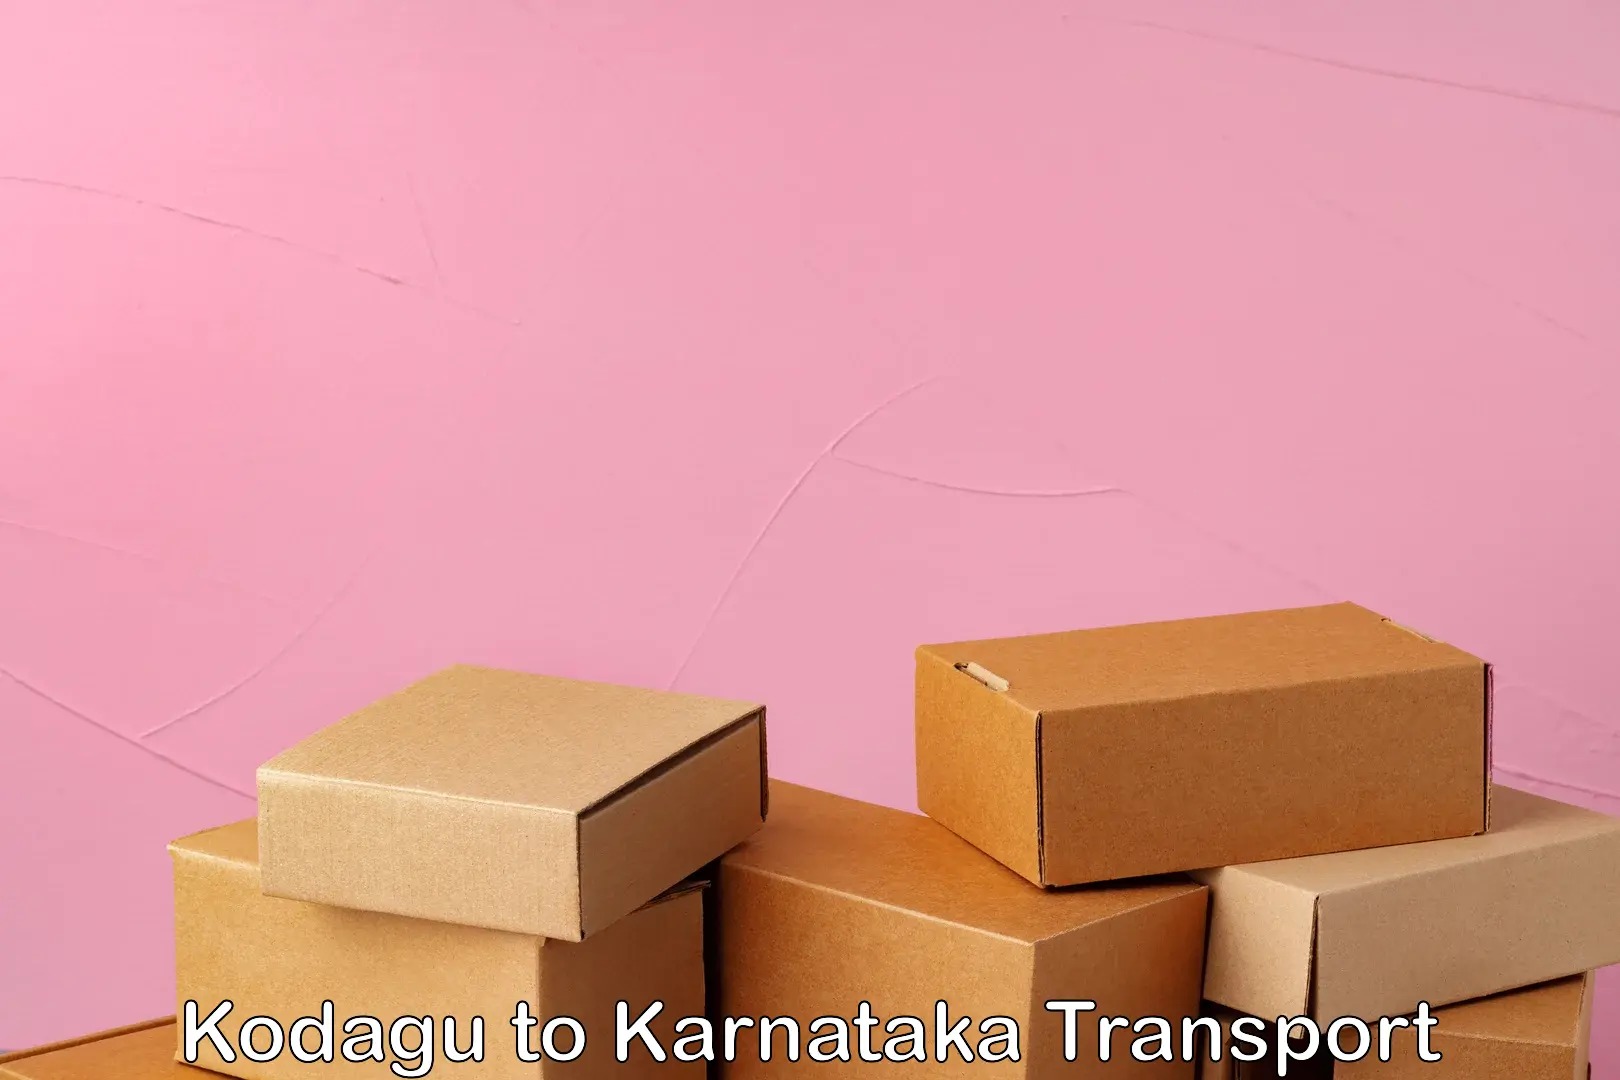 Express transport services Kodagu to Kotturu